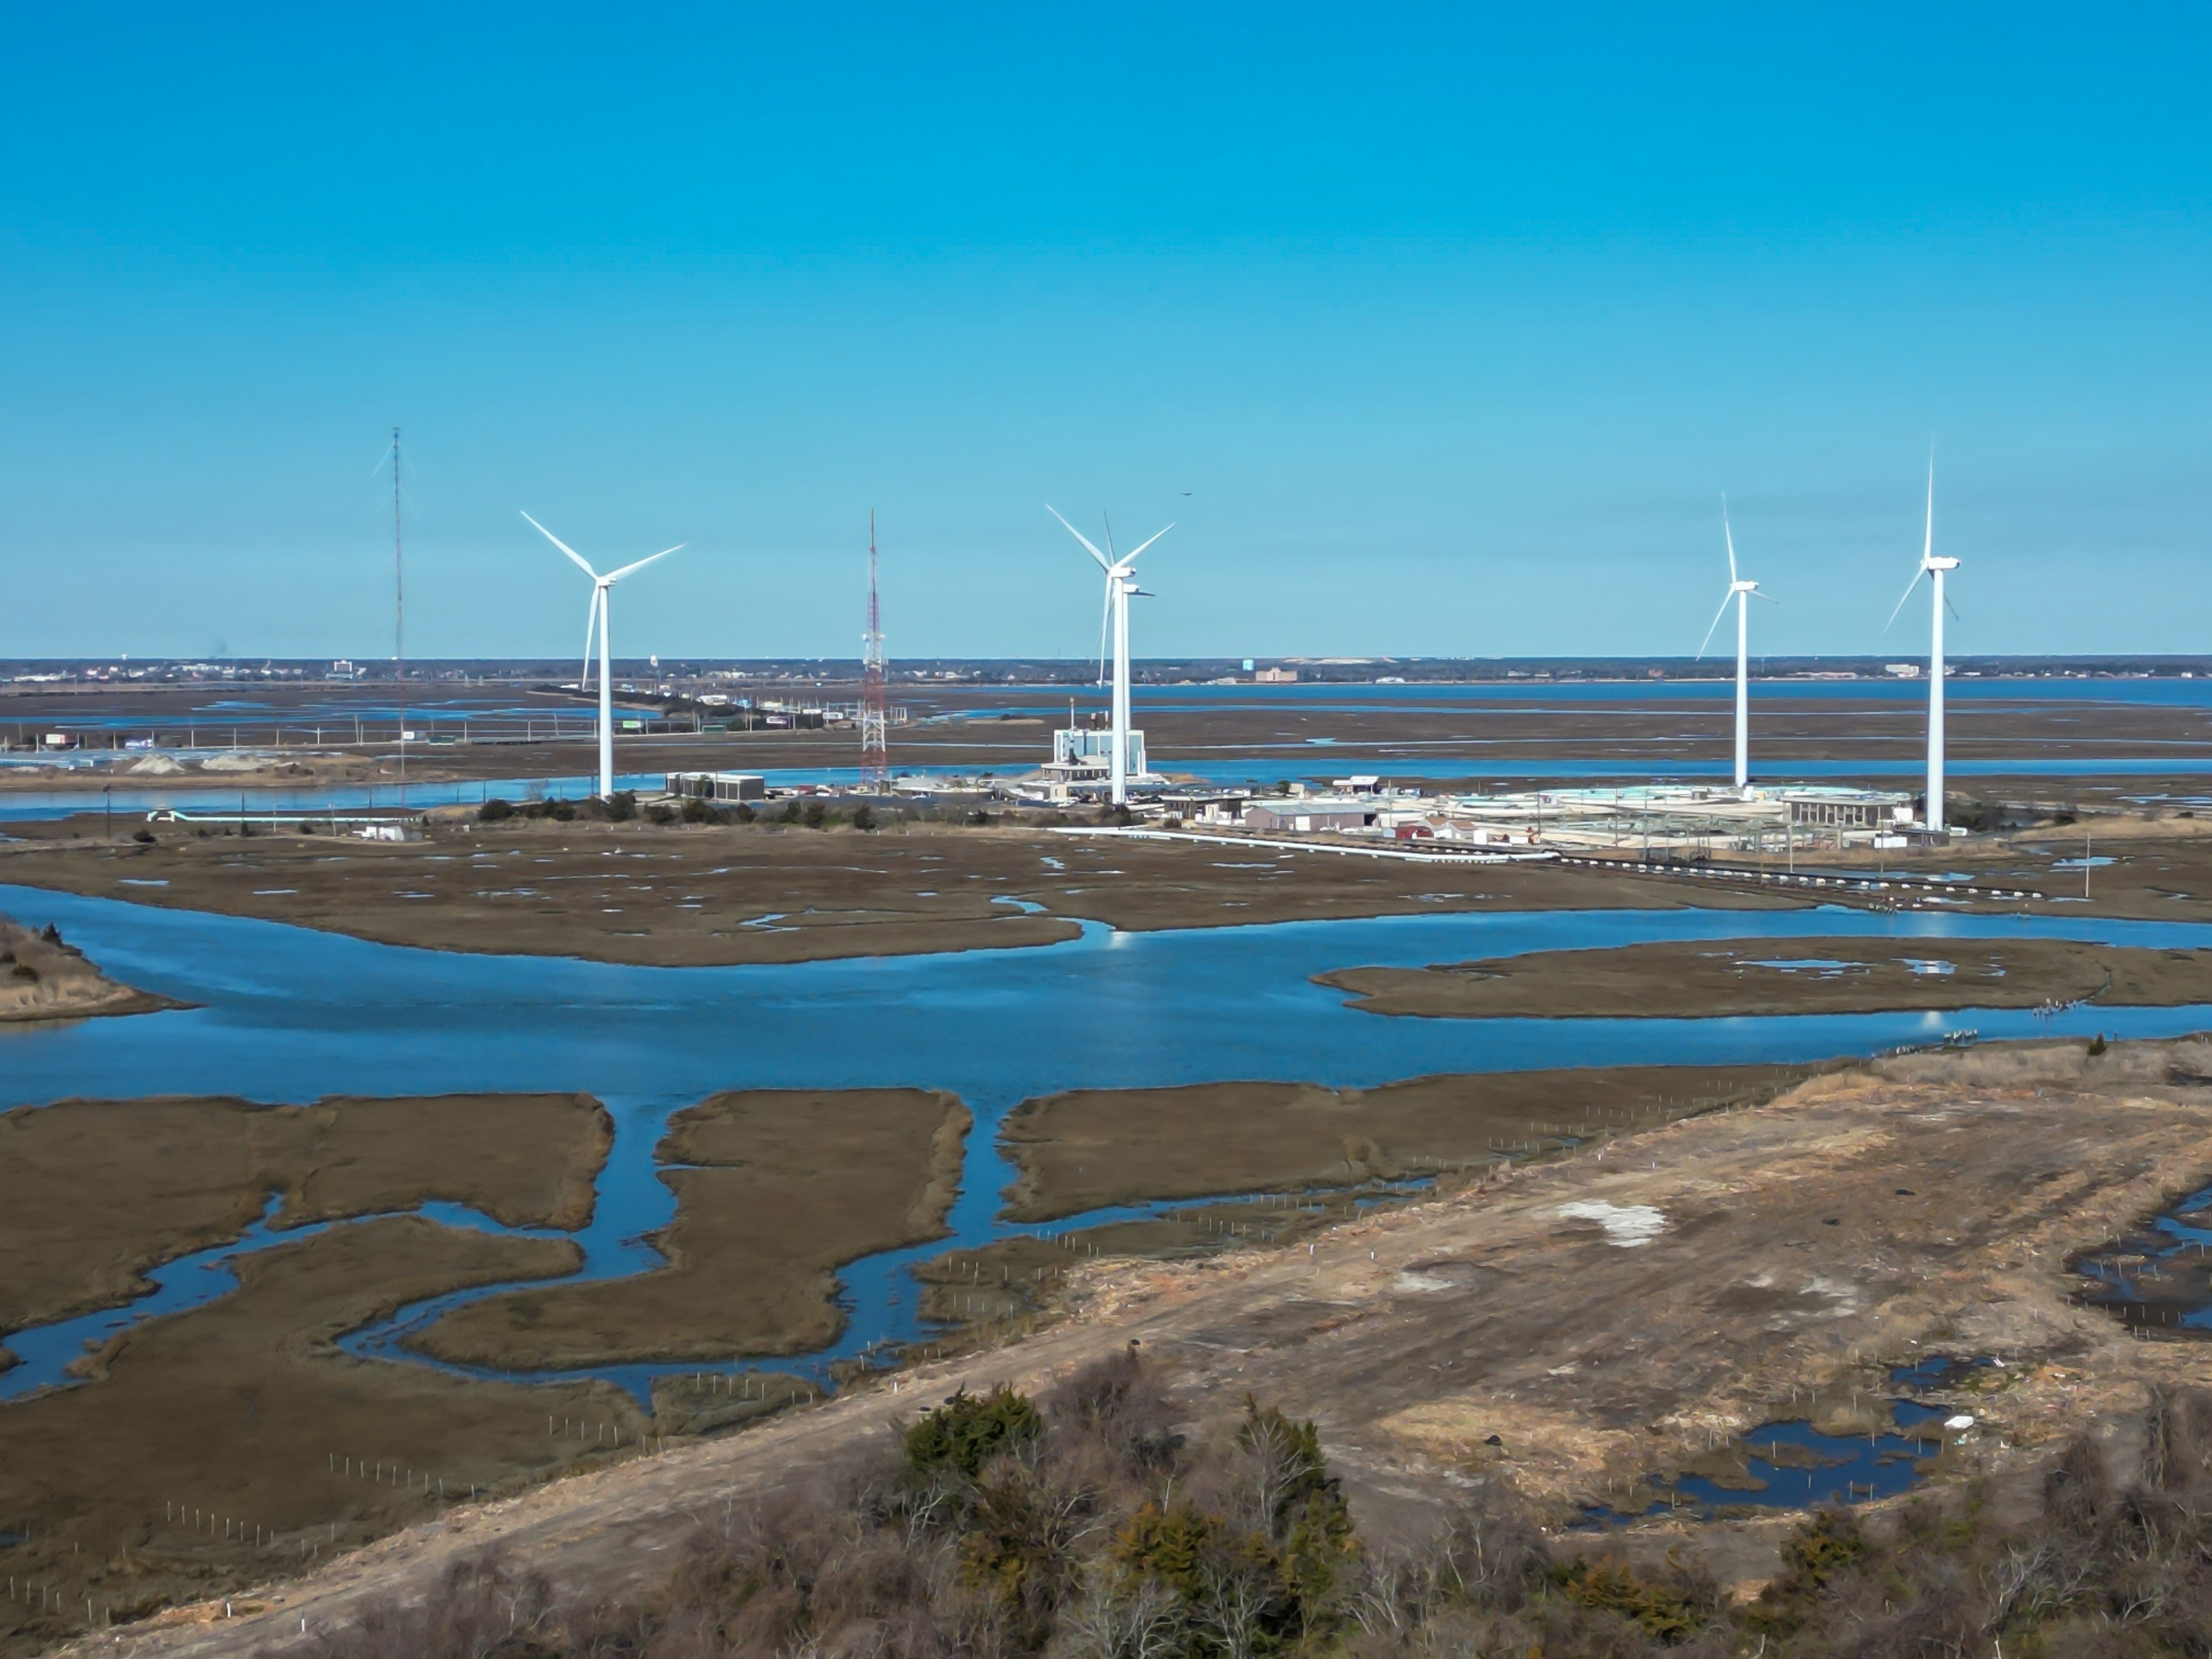 Kitovi i pejzaž u fokusu: Rasprava oko vetroelektrana pored Nju Džersija